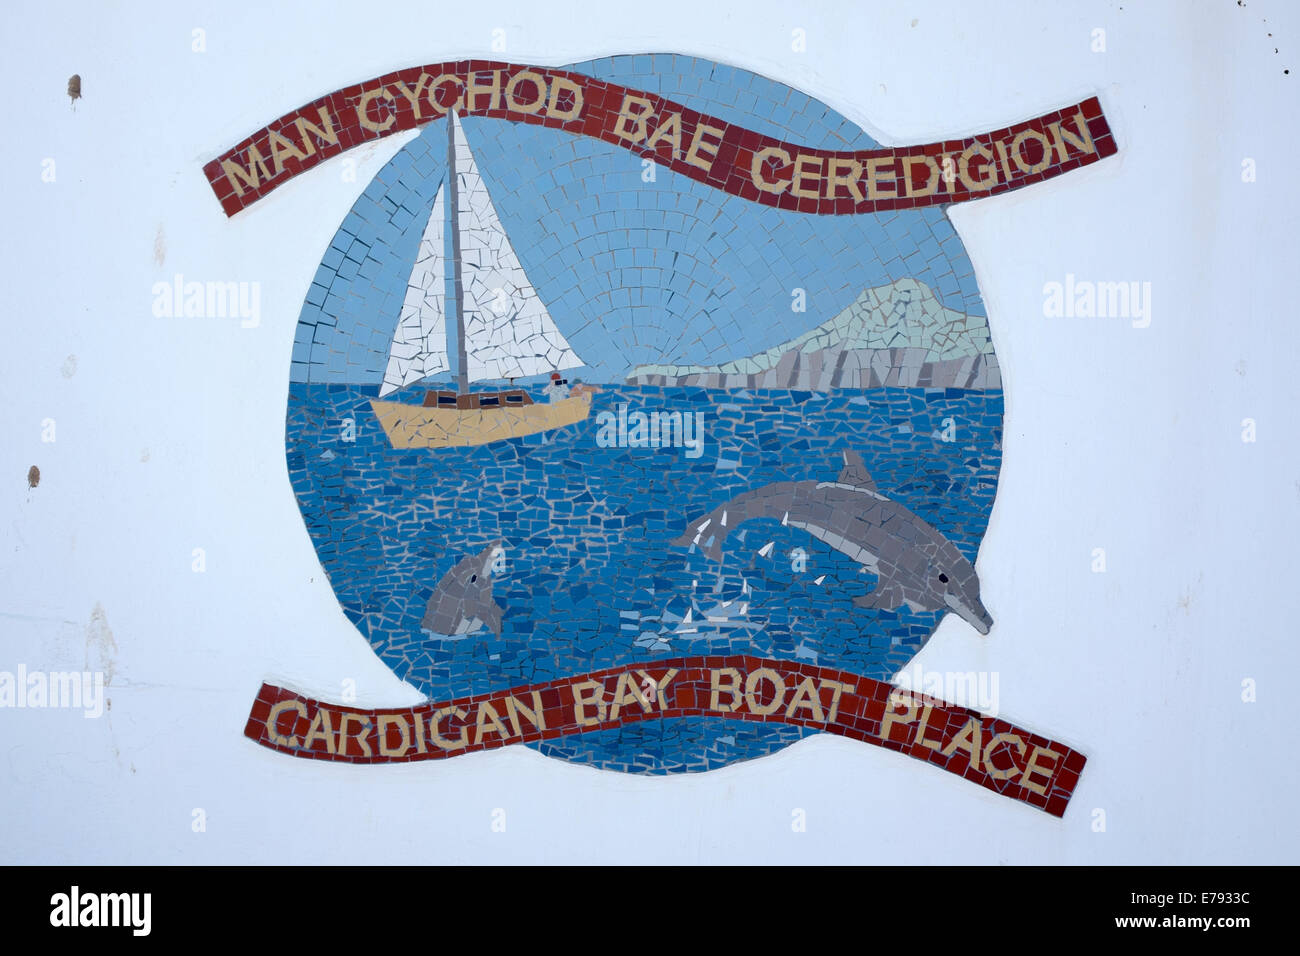 La baie de Cardigan au Pays de Galles Royaume-uni Lieu bateau mer Mosaïque Banque D'Images